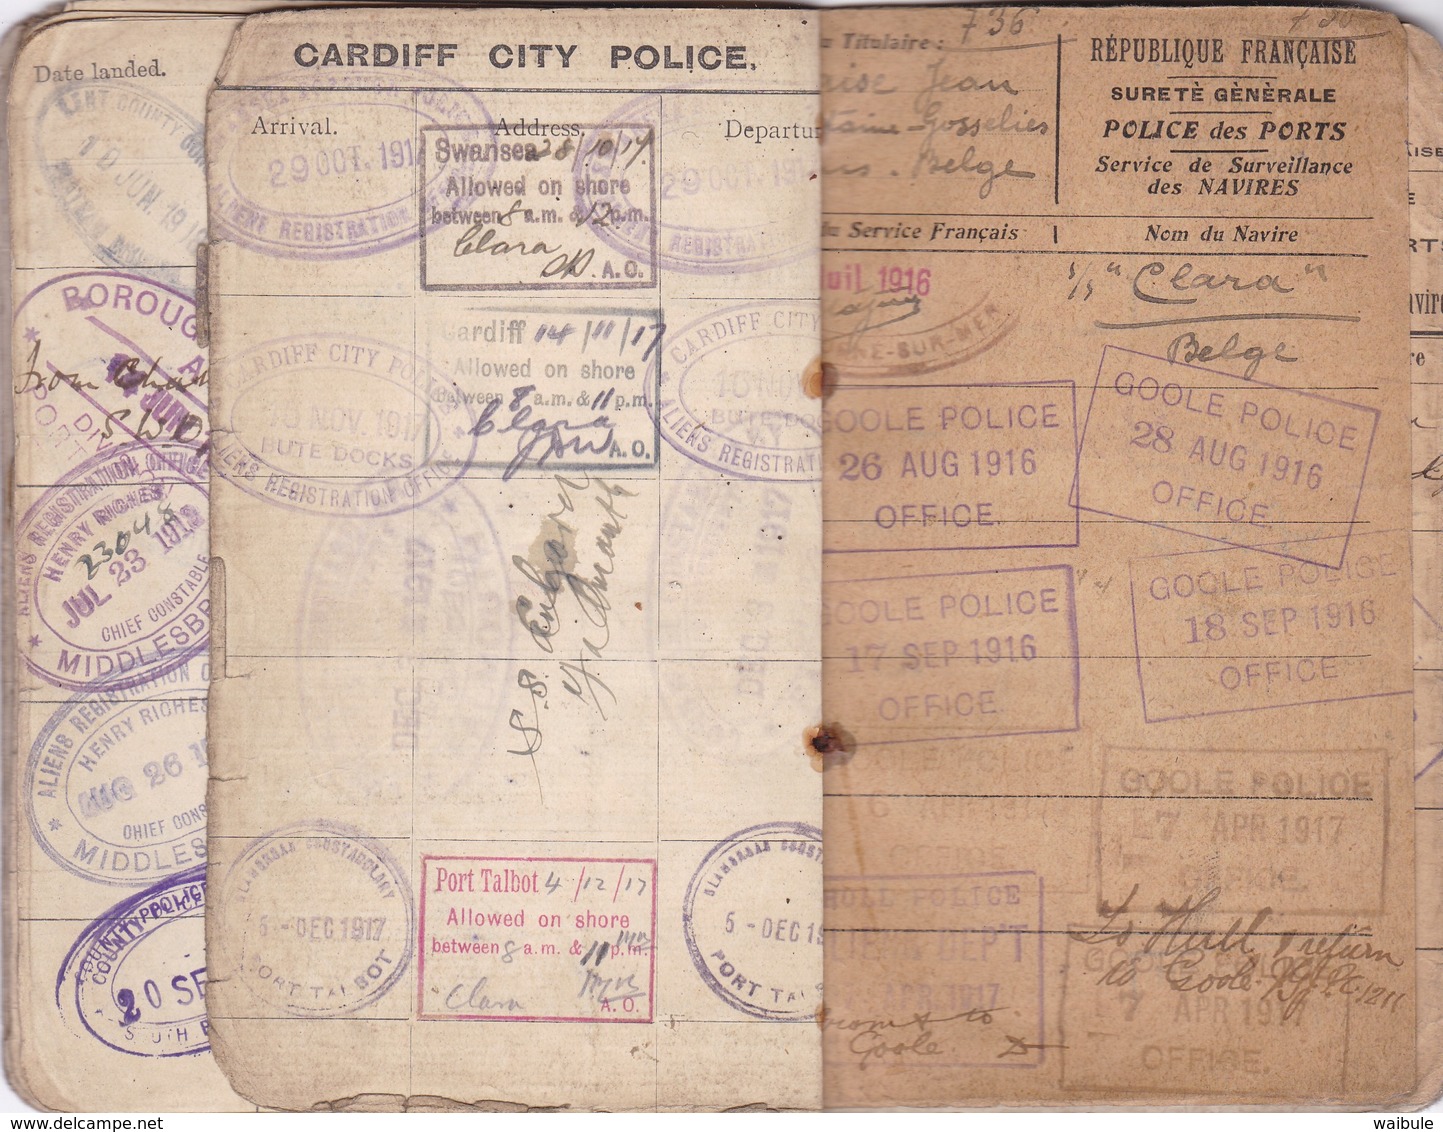 carnet identité ausweis marin belge nombreux cachets griffe UK immigration laissez passer 1915/1919